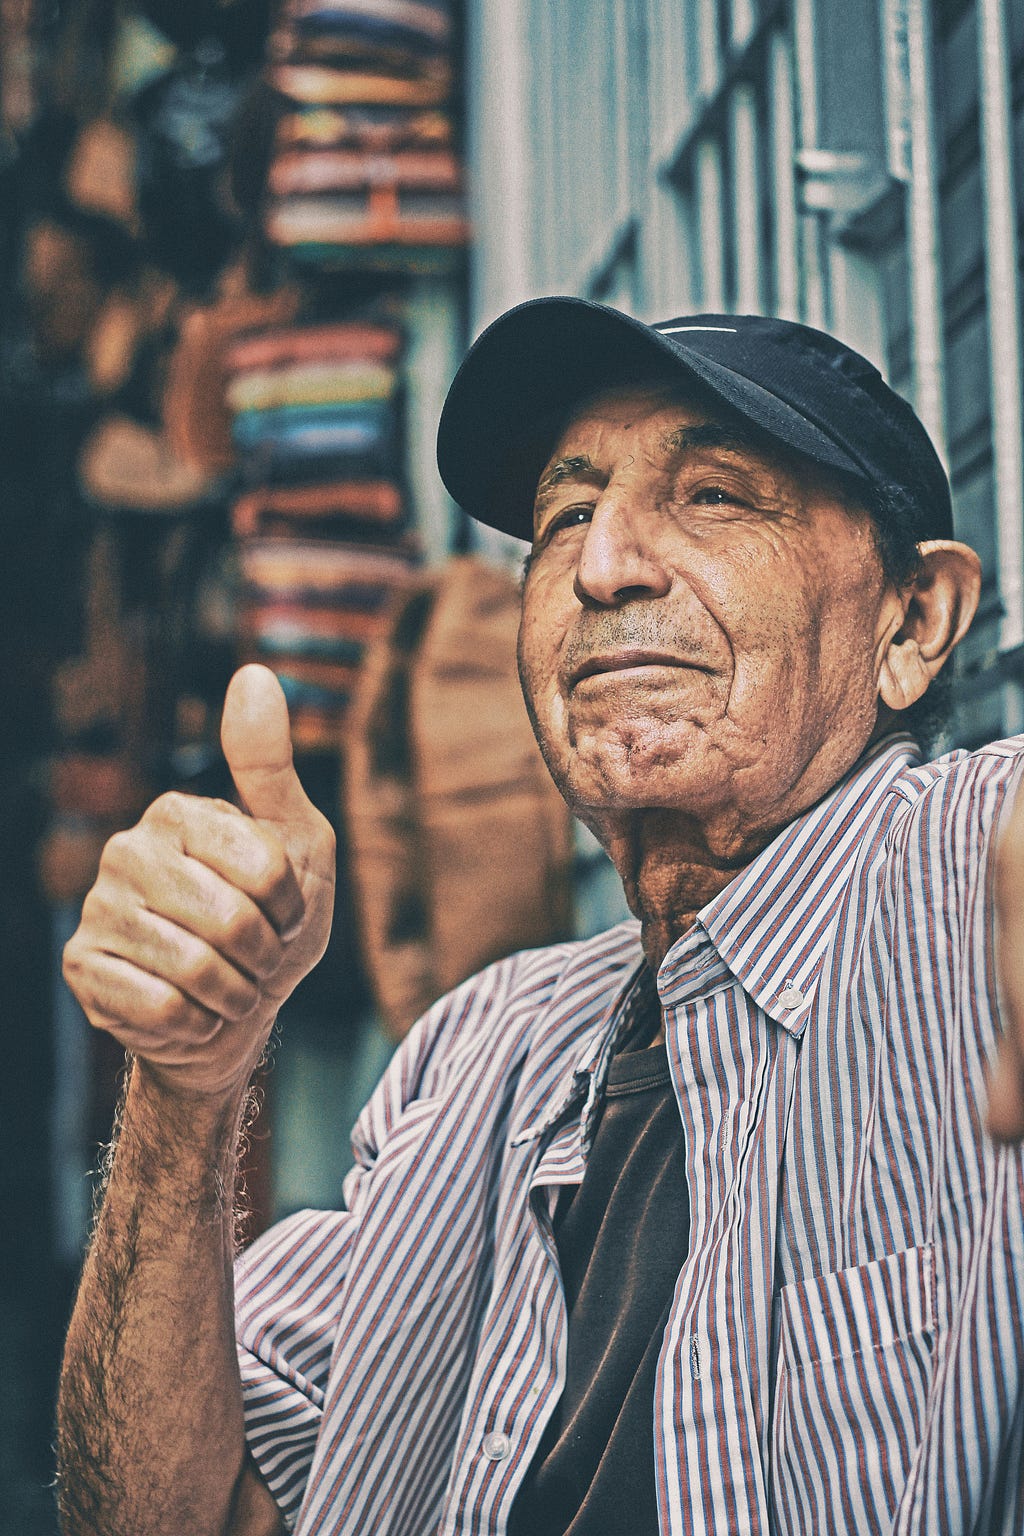 older gentleman with thumbs up encouragment